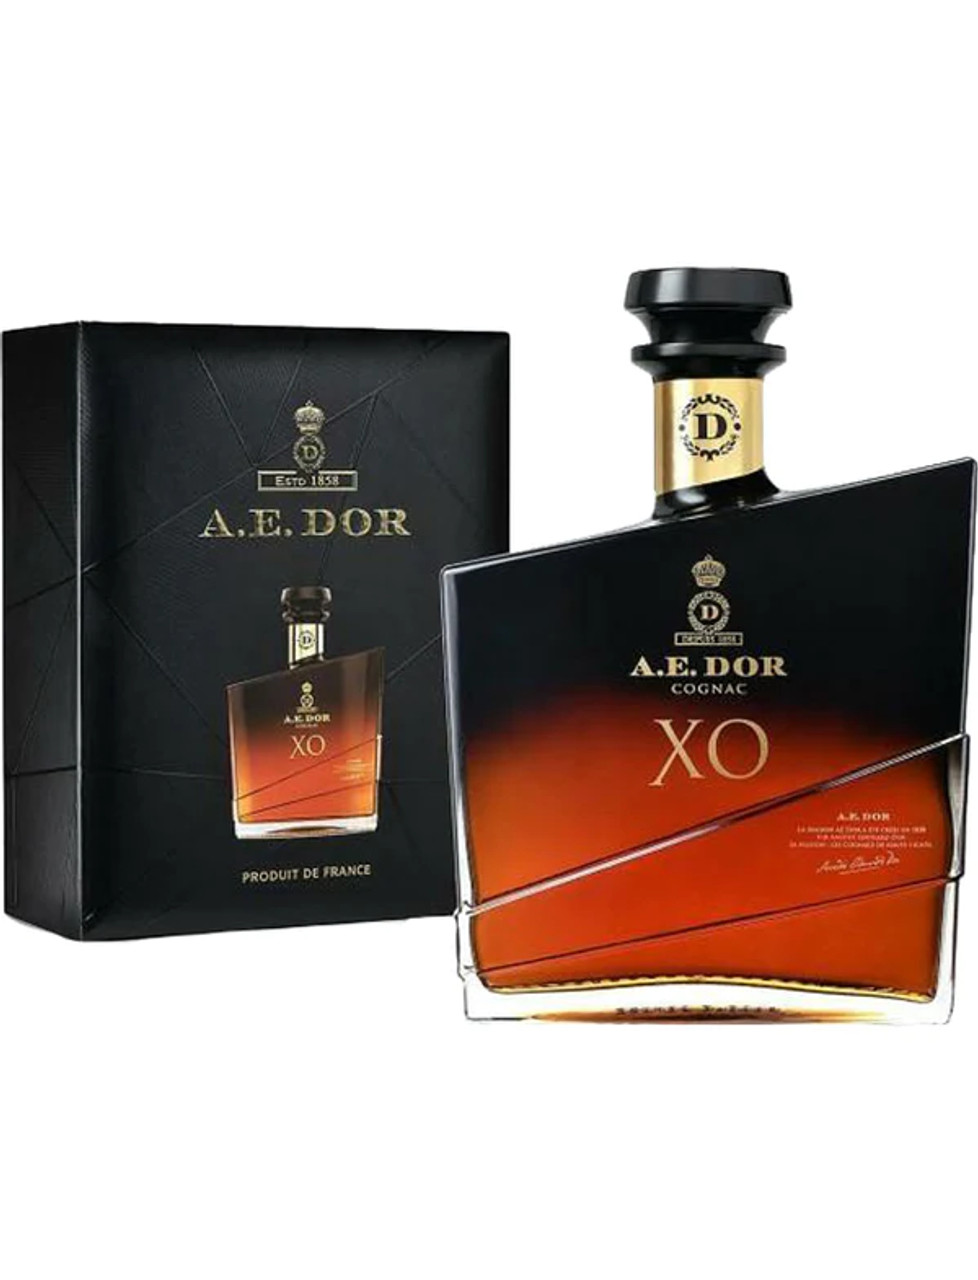 A.E. DOR XO Cognac 750 ML